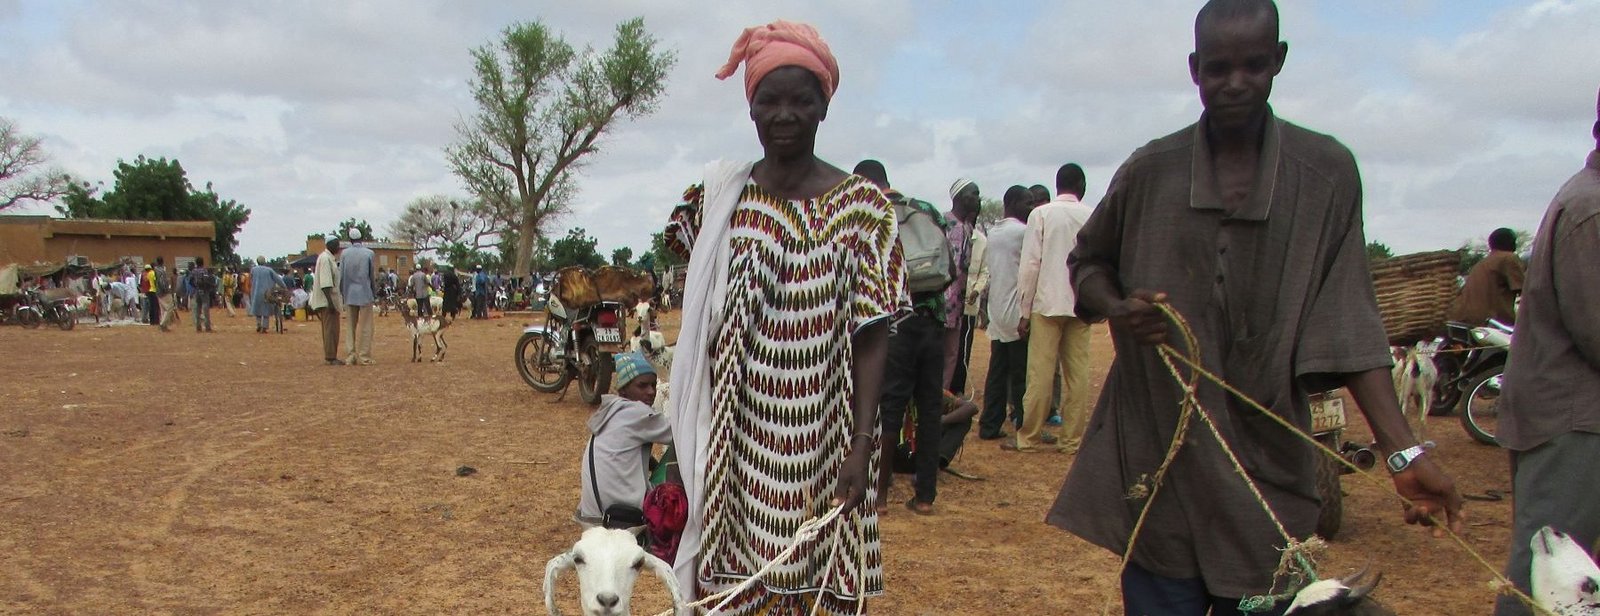 Kleinbauern sichern Einkommen durch Viehzucht